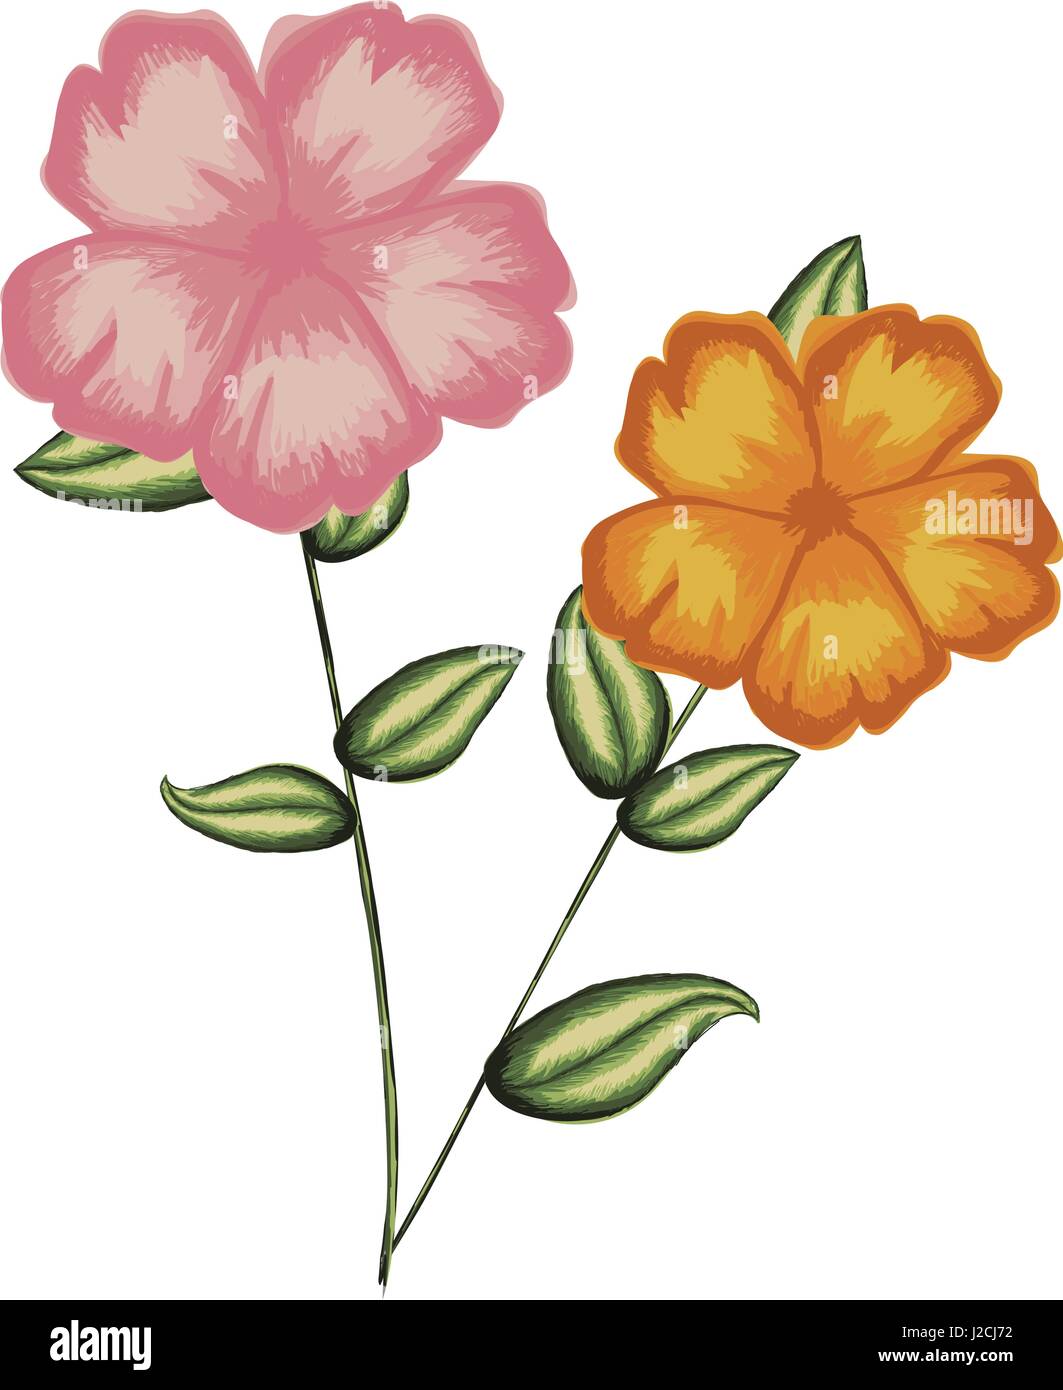 Acquerello silhouette di malva pianta con fiori rosa e arancio Illustrazione Vettoriale